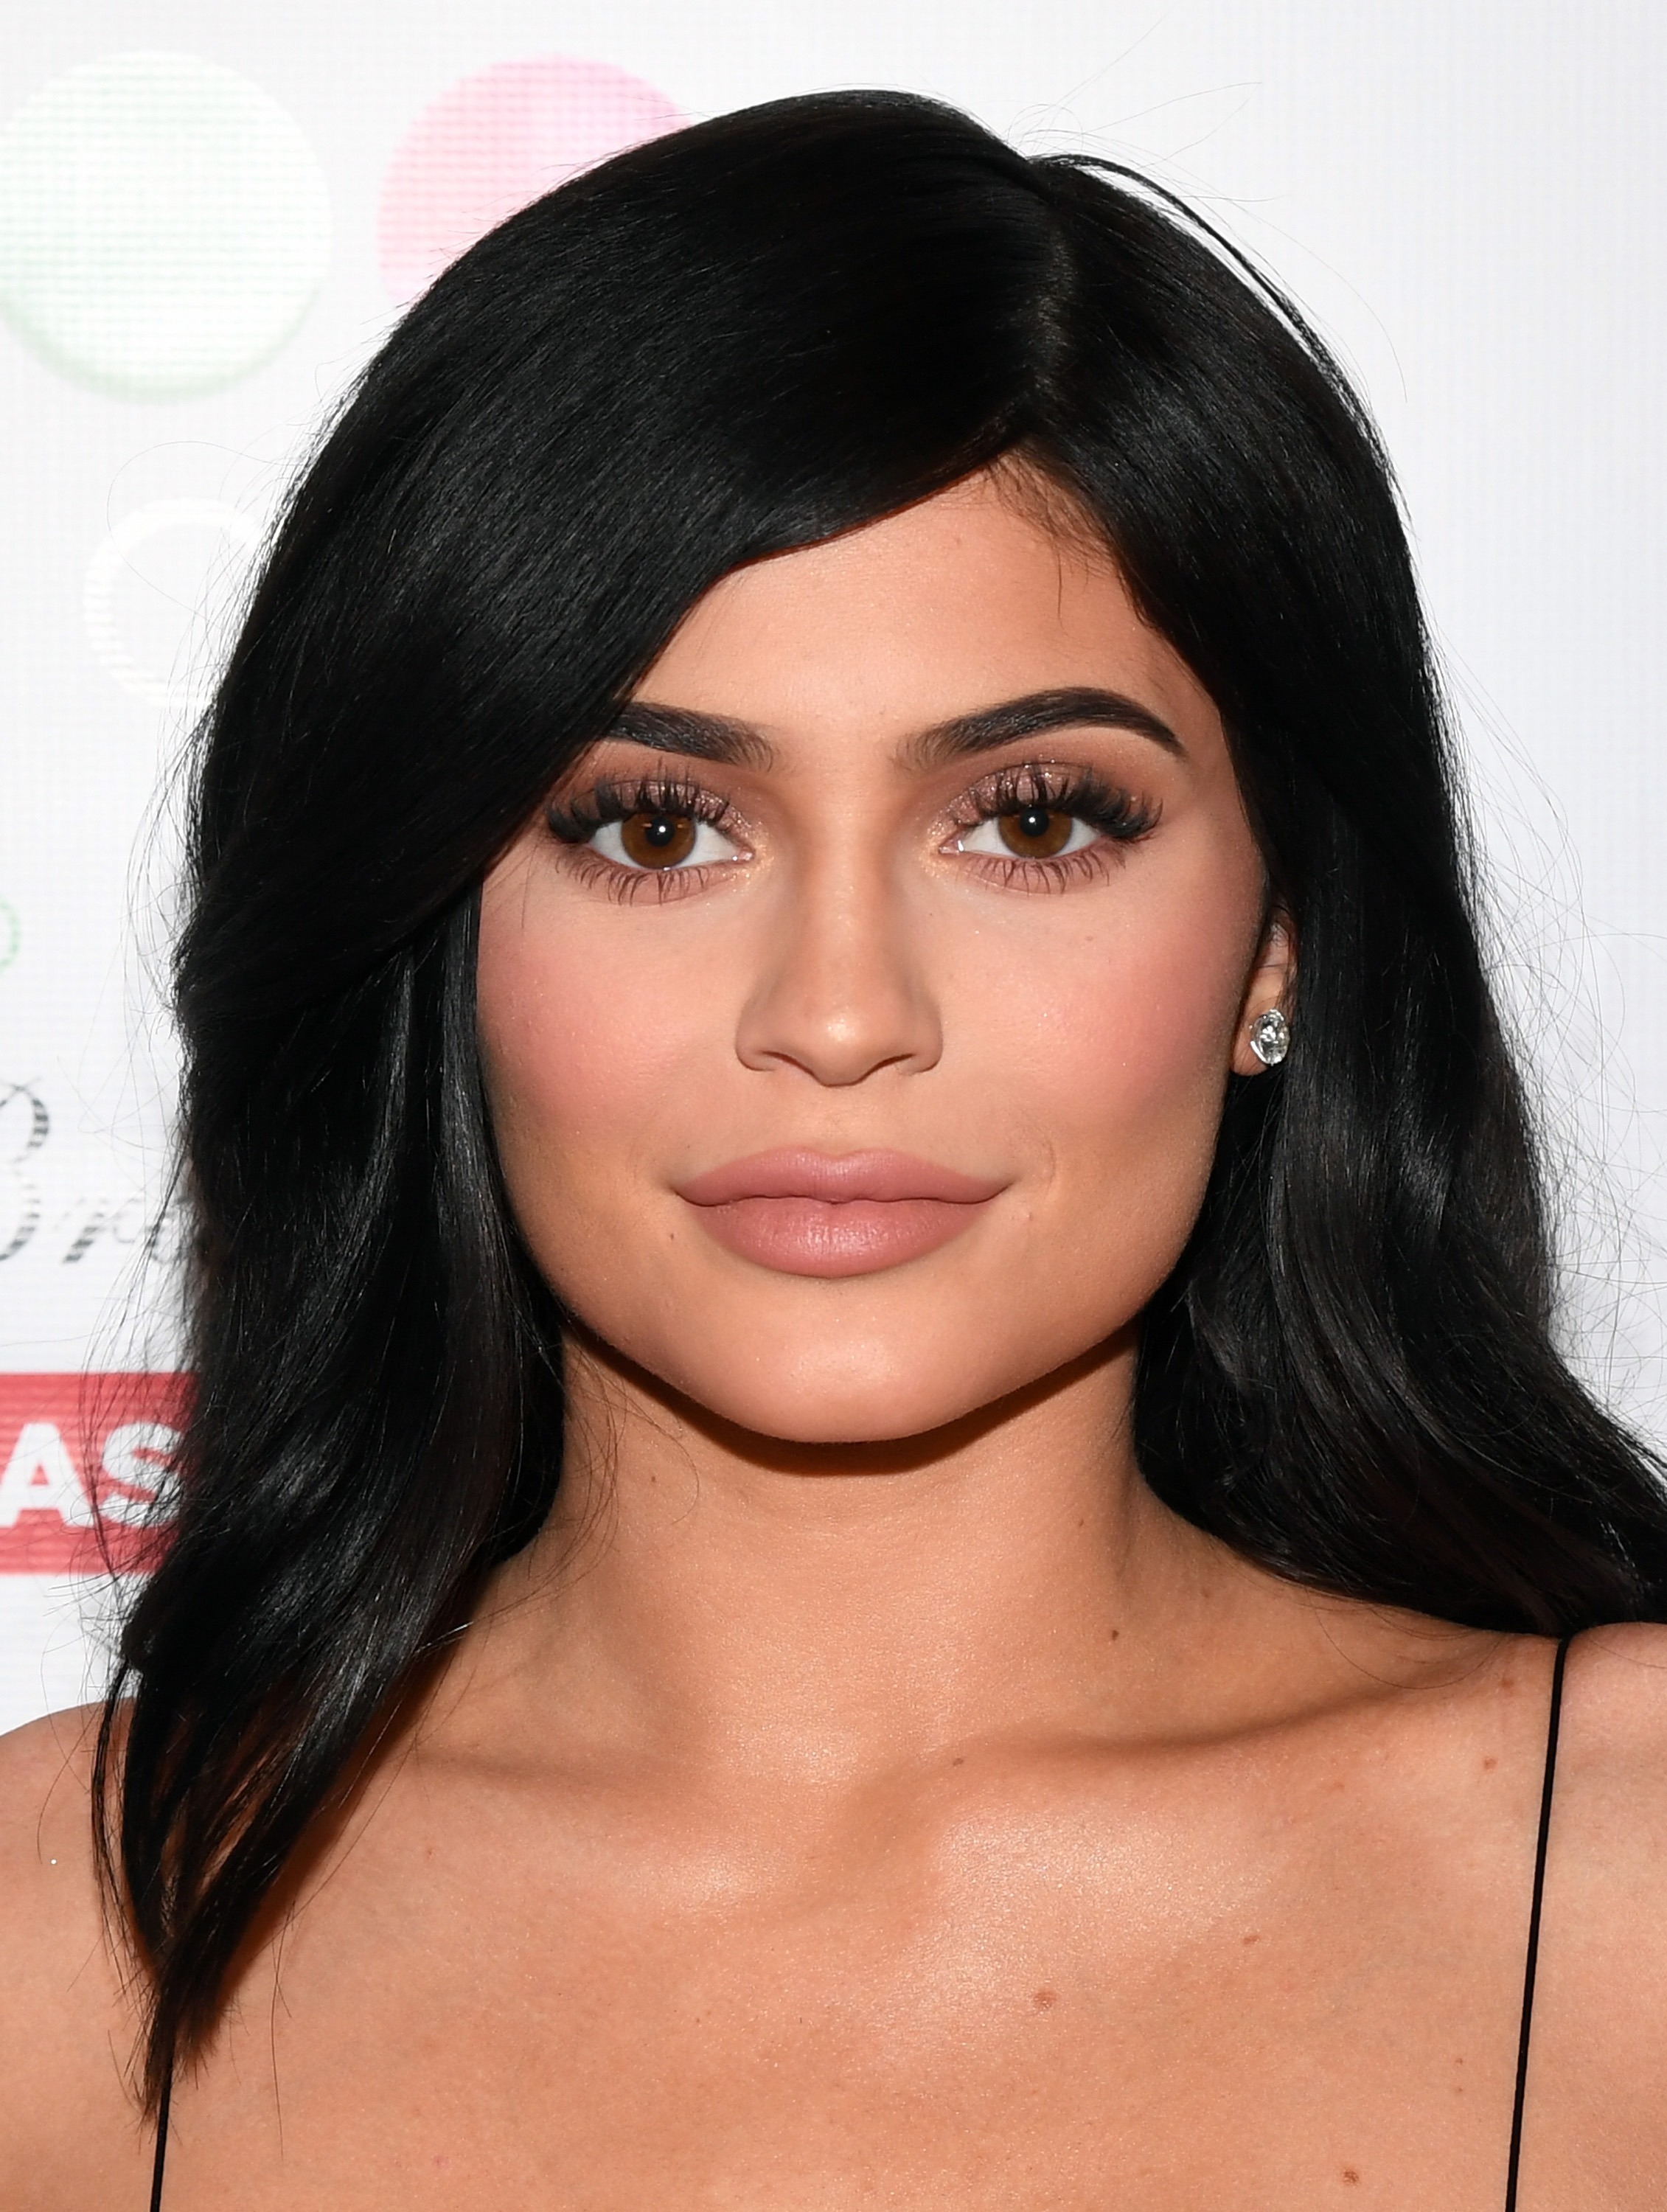 Η Kylie Jenner λέει πως άρχισε να φτιάχνει κραγιόν γιατί ένιωθε τρομερά ανασφαλής με τα χείλη της!